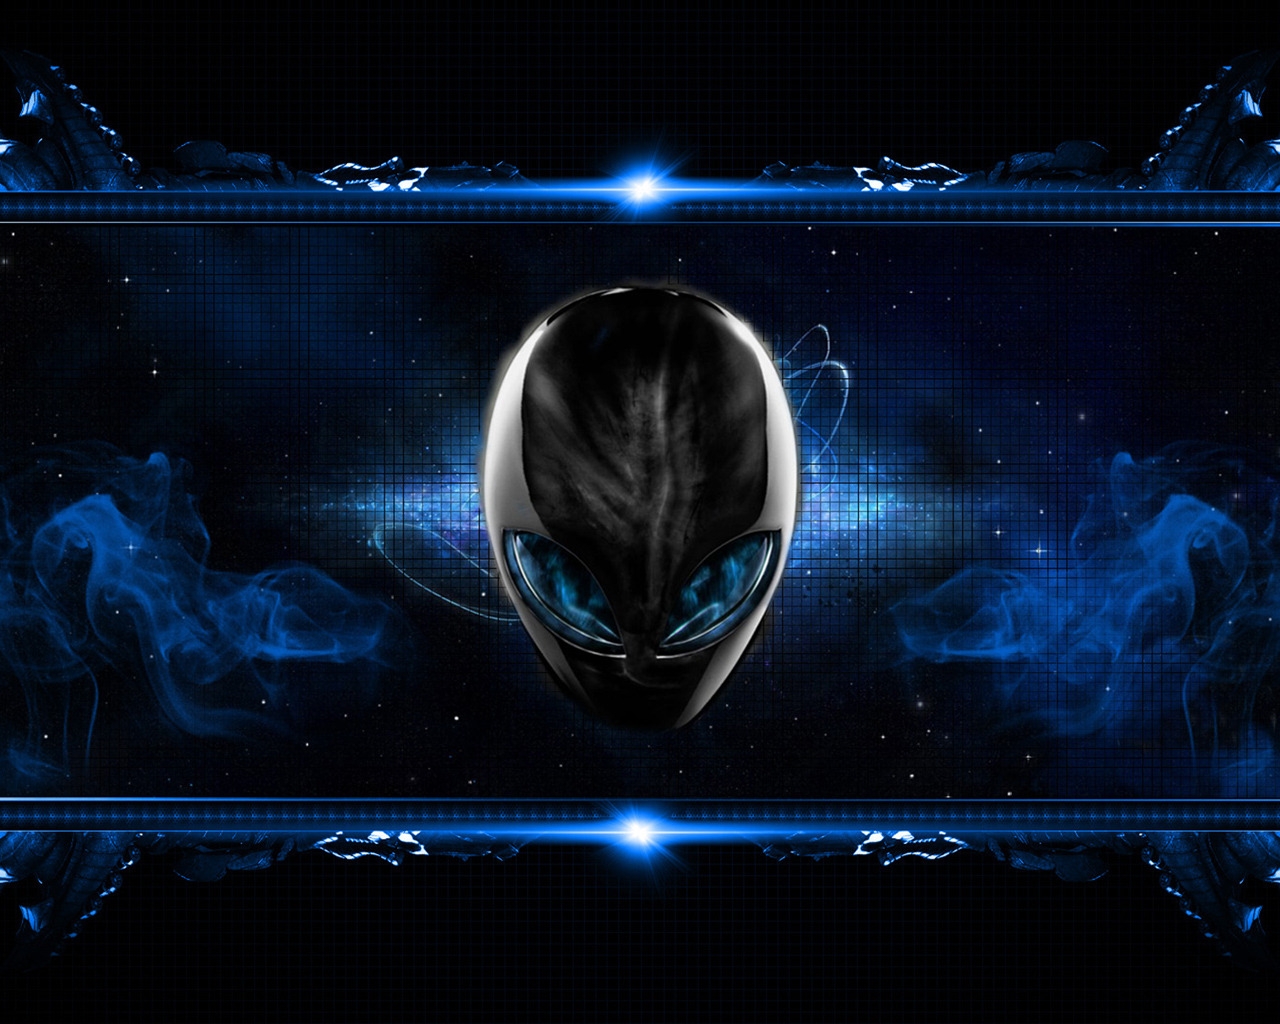 Blue Alien for 1280 x 1024 resolution